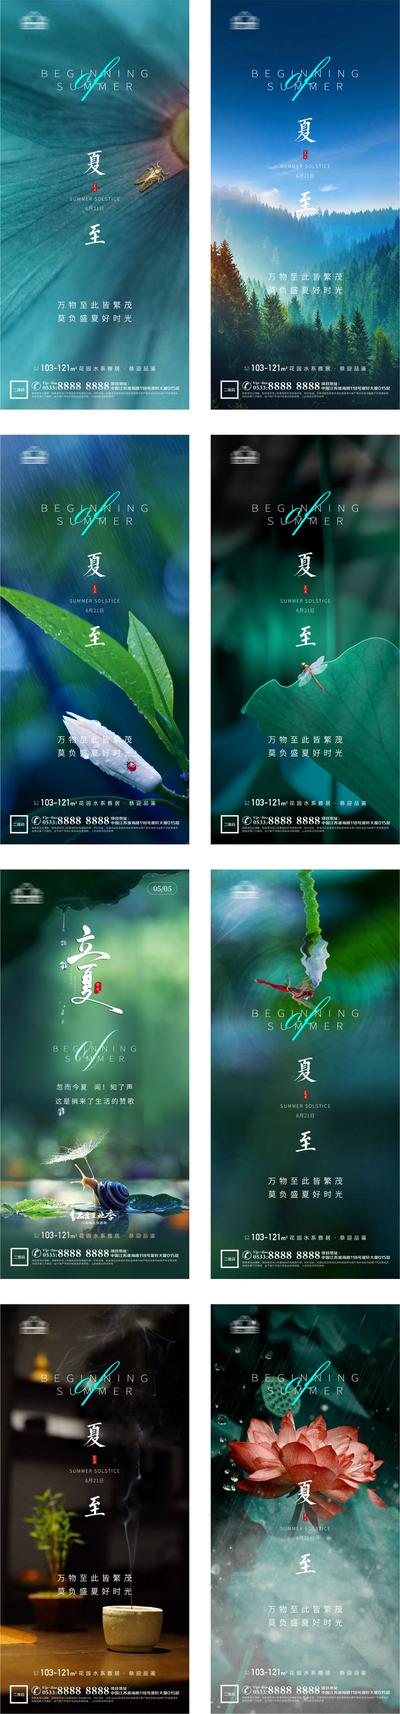 南门网 海报 房地产 二十四节气 夏至 荷花 蜻蜓 系列